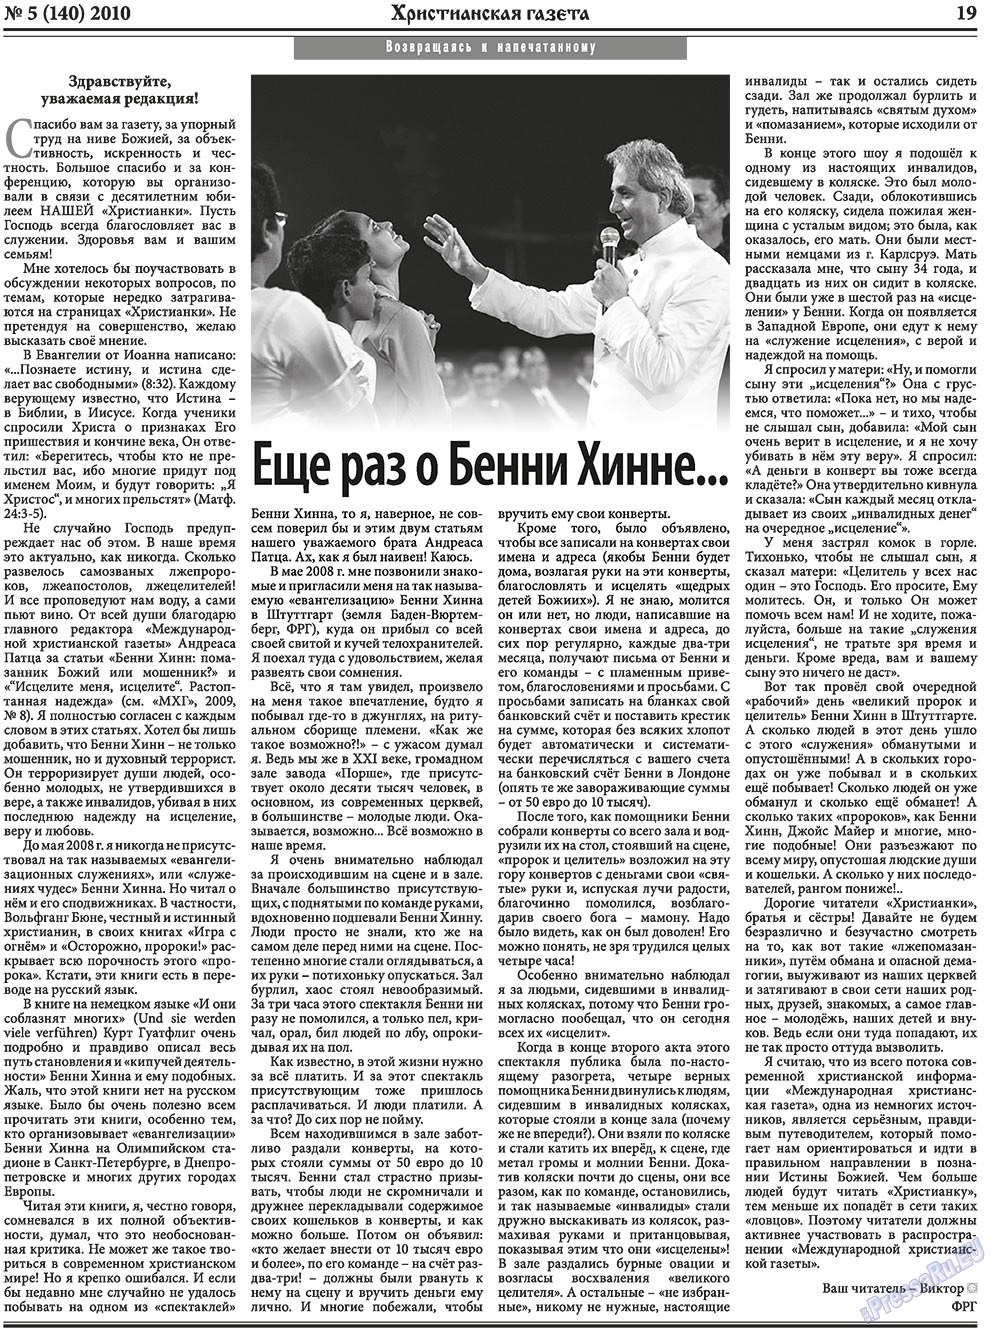 Христианская газета, газета. 2010 №5 стр.27